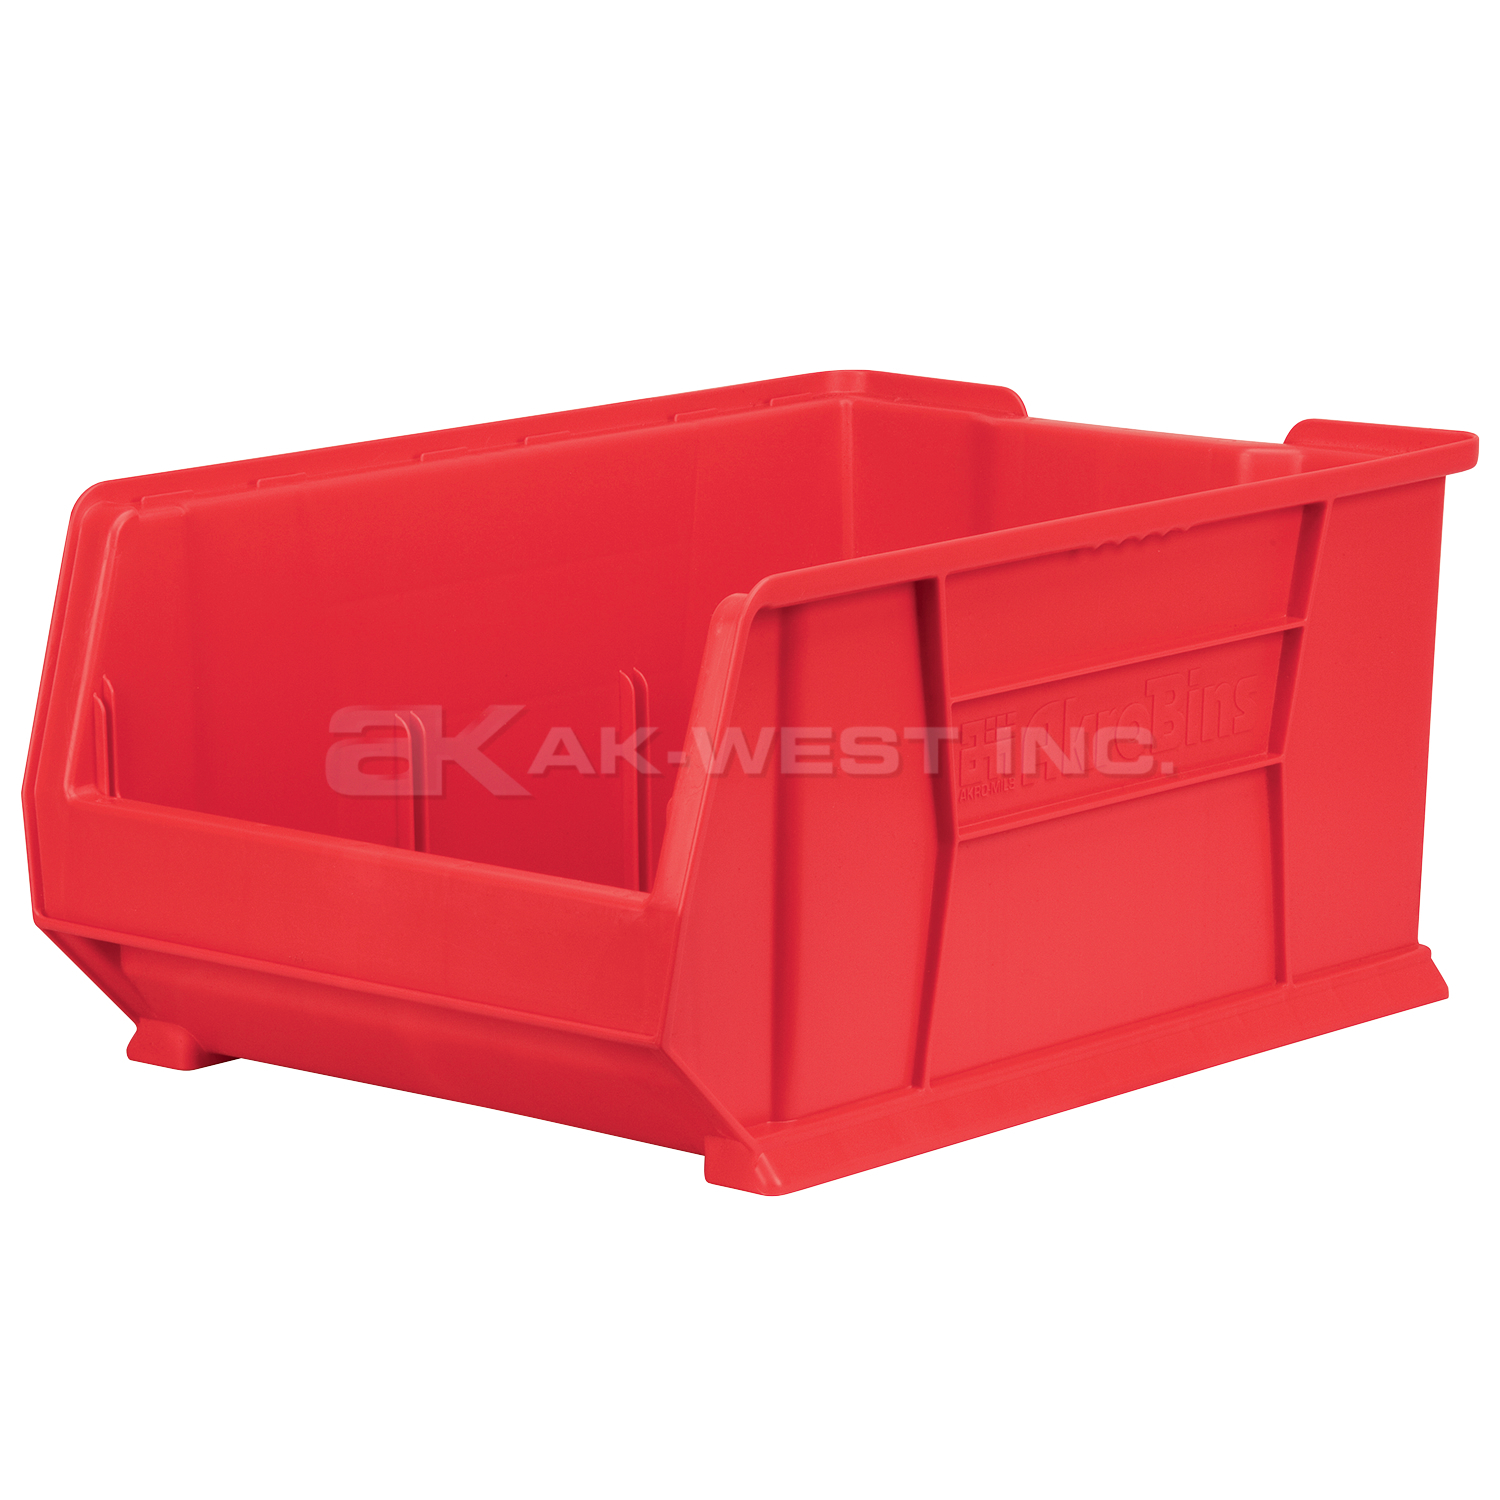 Red, 23-7/8" x 16-1/2" x 11" Stacking Shelf Bin (1 Per Carton)